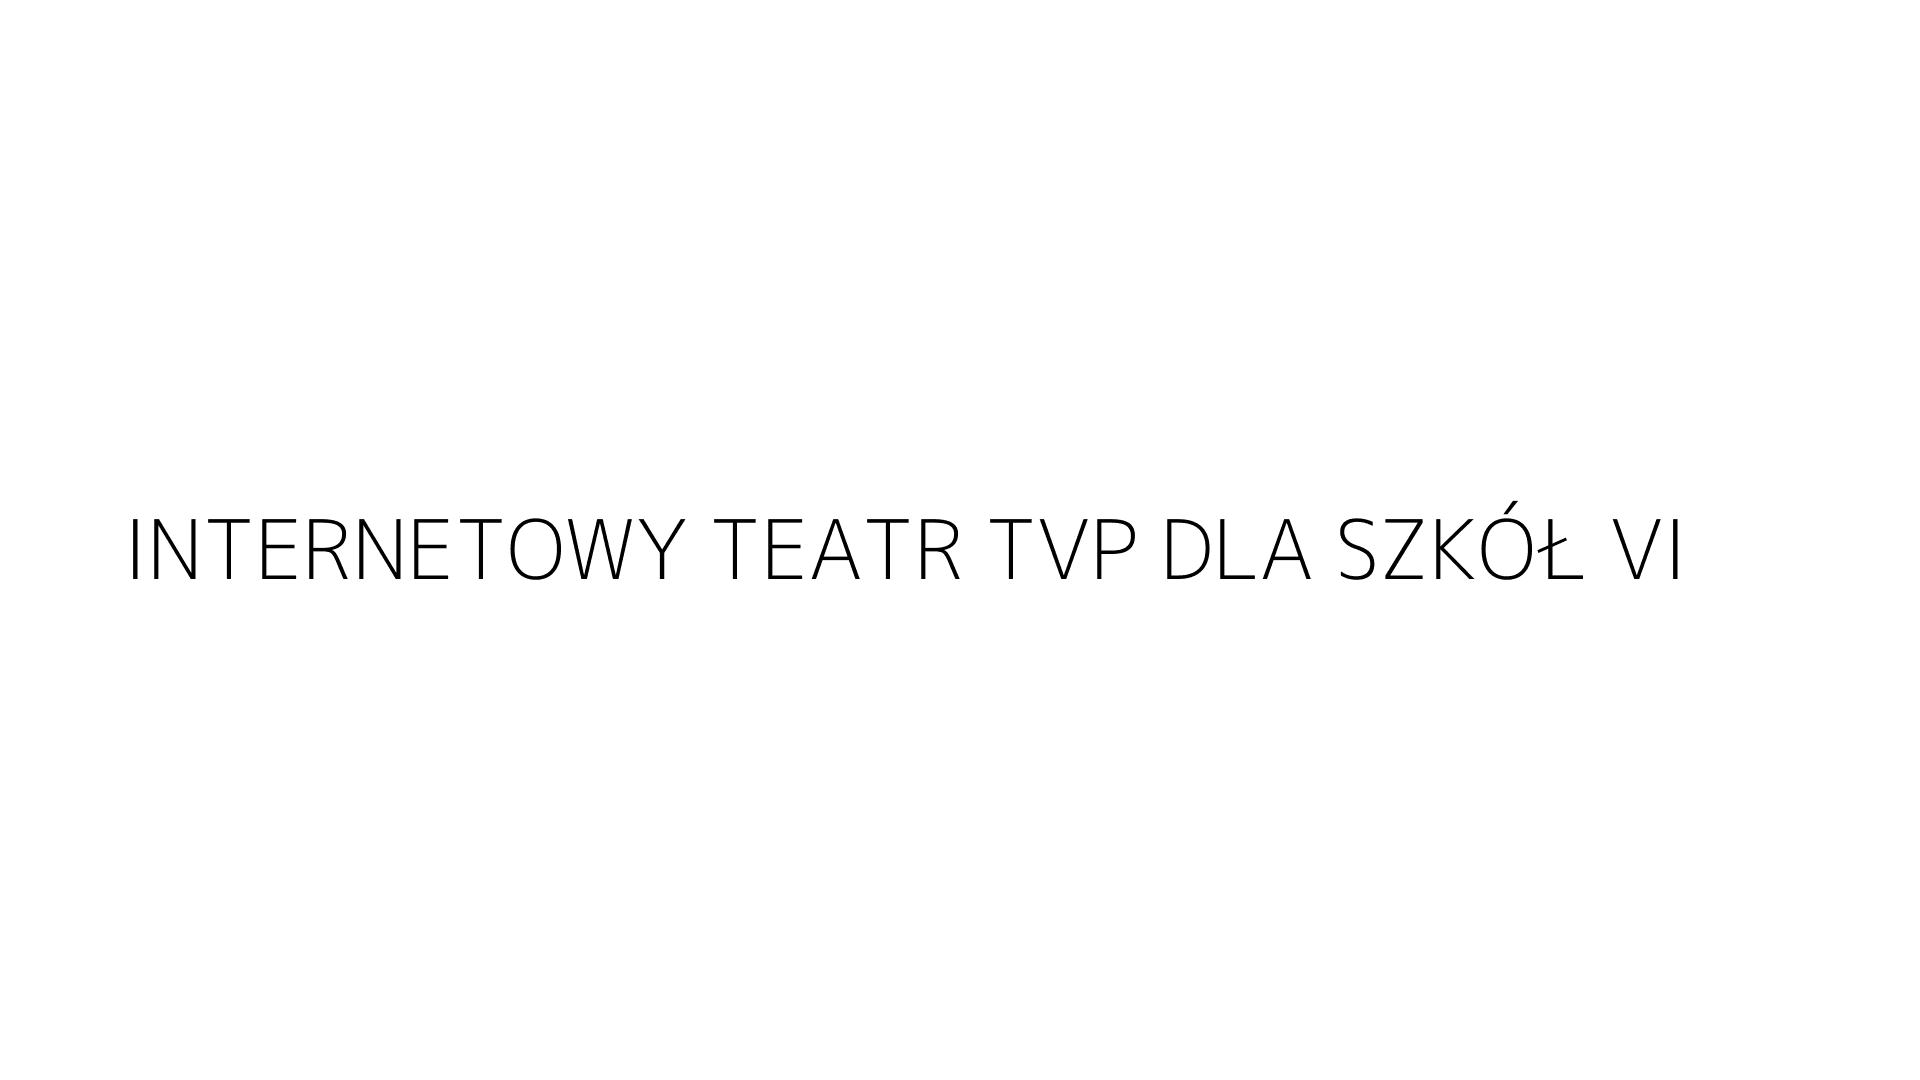 INTERNETOWY TEATR TVP DLA SZKÓŁ VI